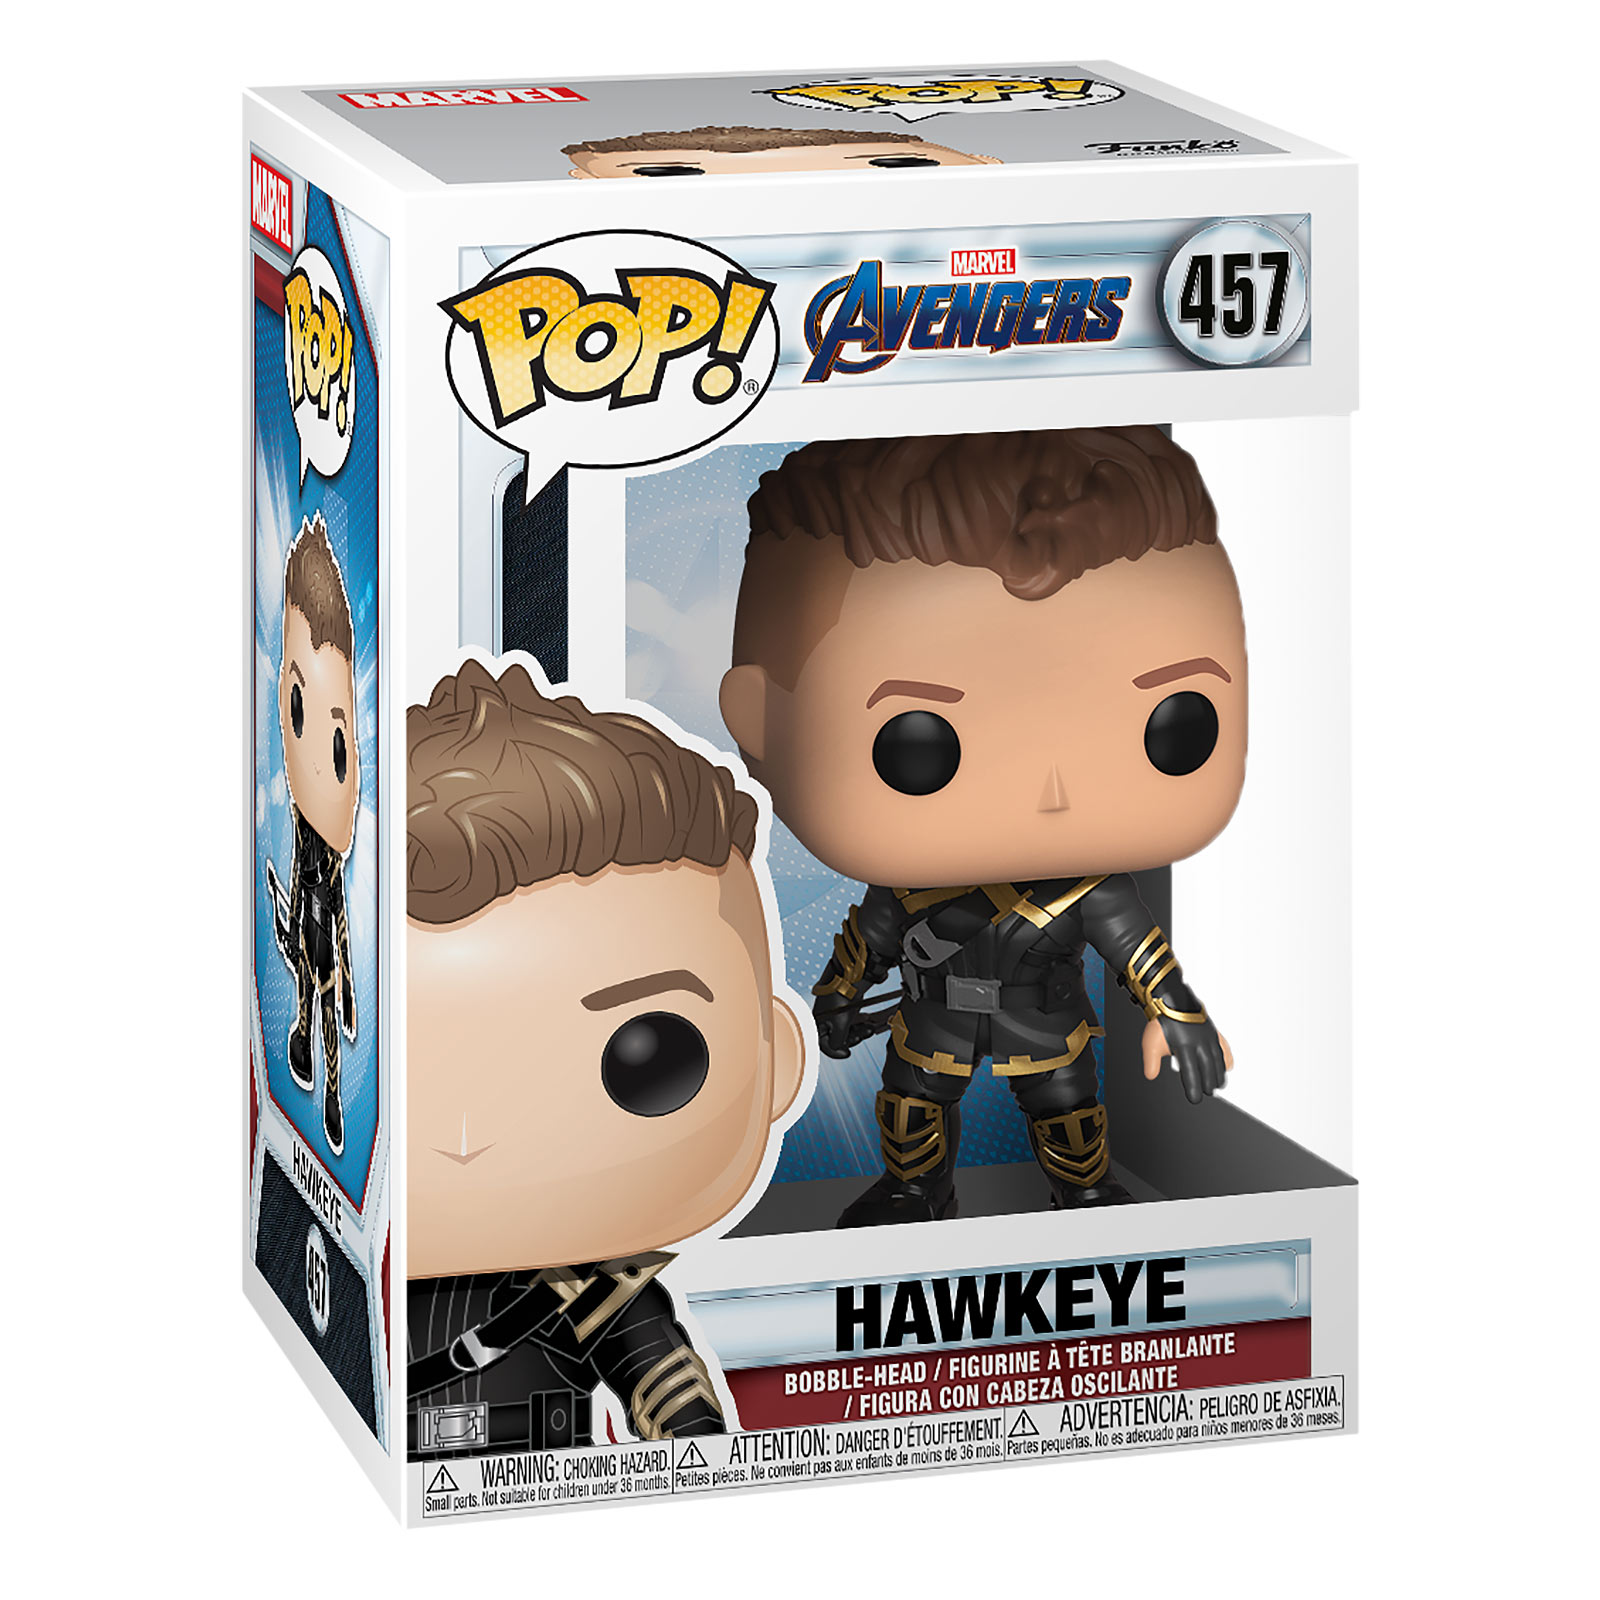 Avengers - Hawkeye Endgame Funko Pop bobblehead figure